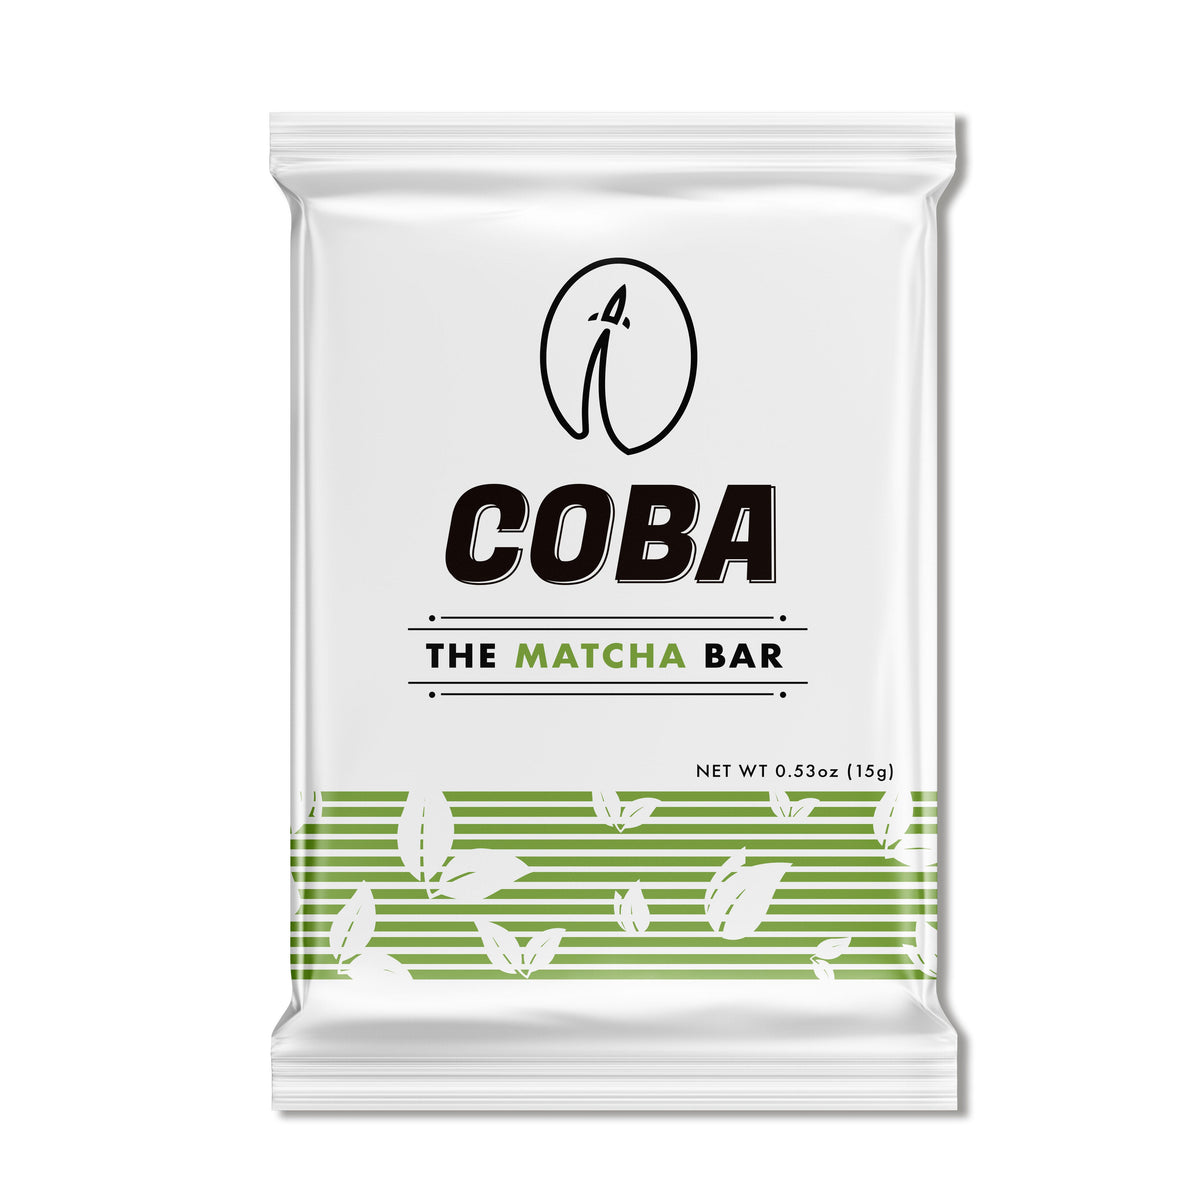 COBA, The Matcha Bar